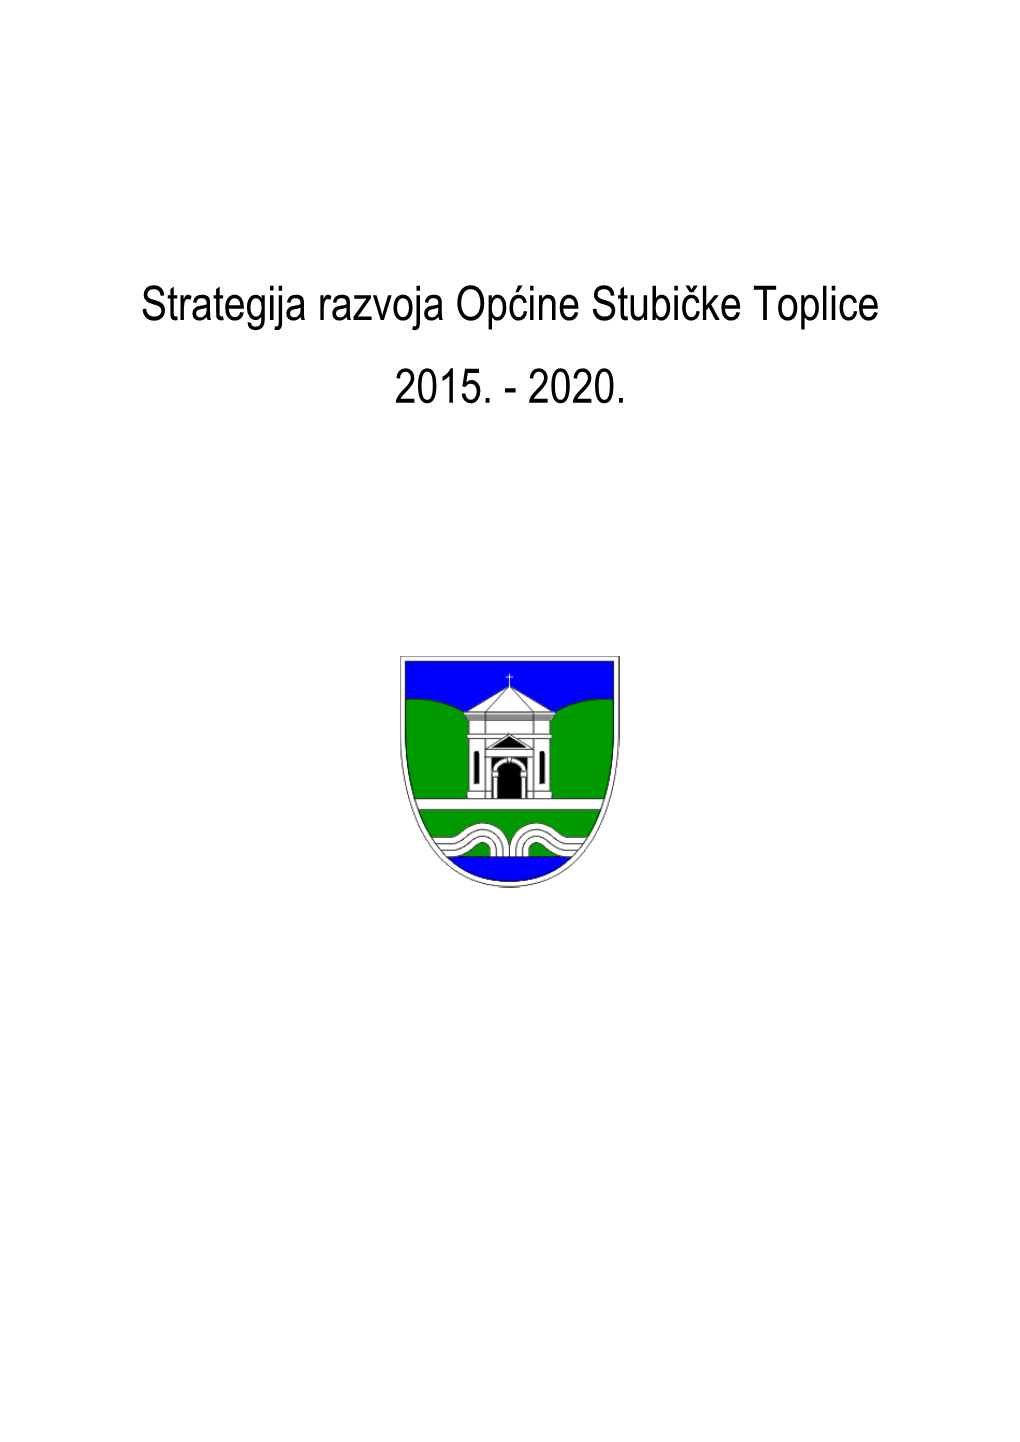 Strategija Razvoja Općine Stubičke Toplice 2015. - 2020